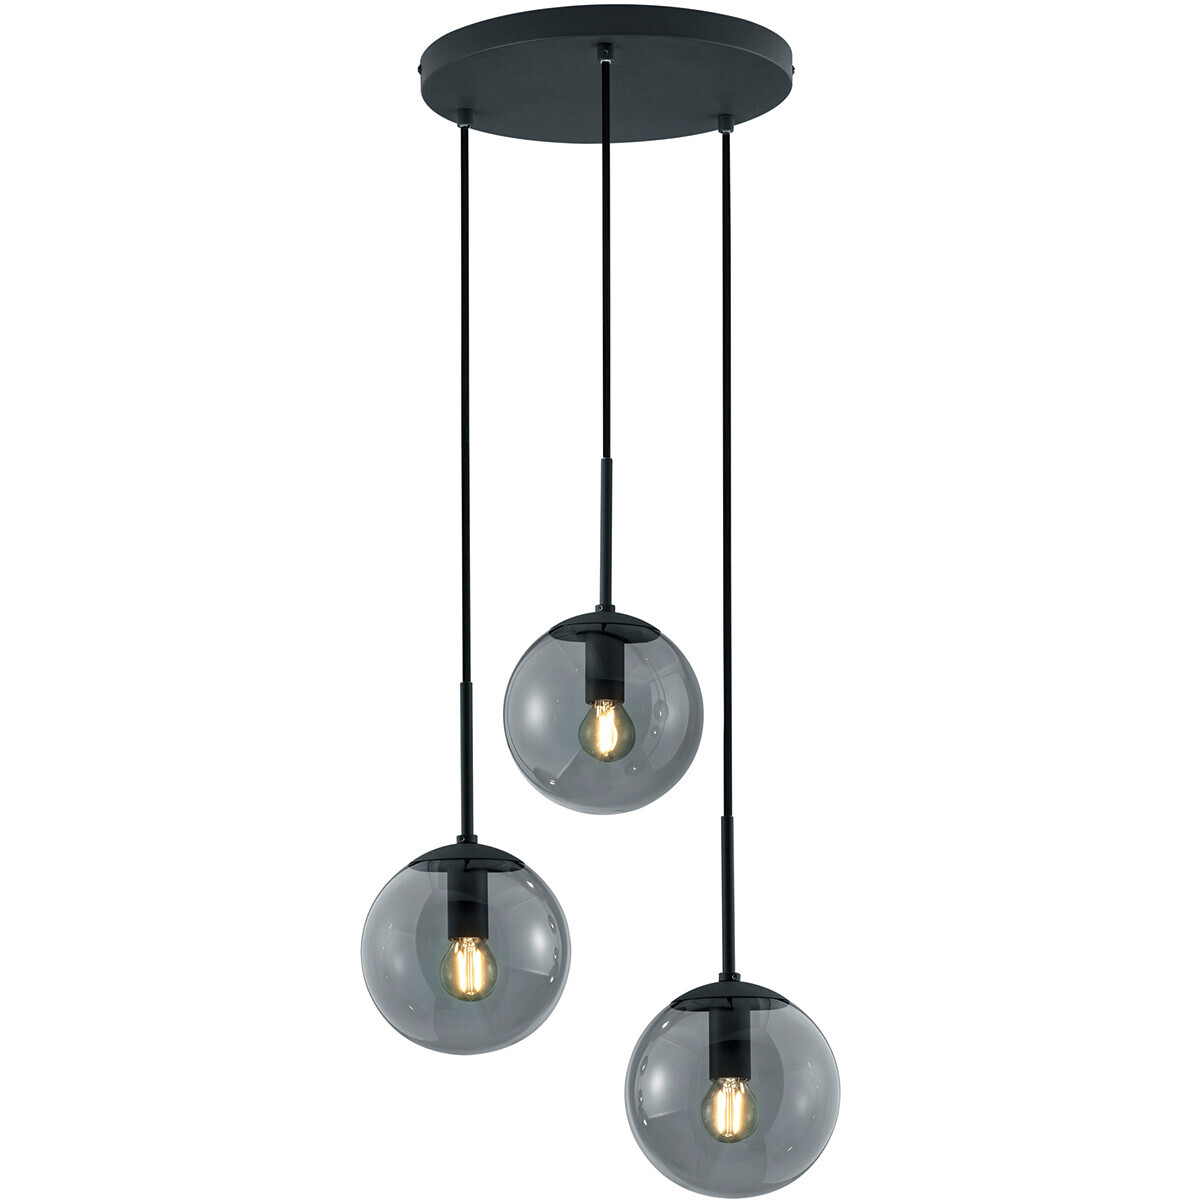 BES LED LED Hanglamp - Trion Balina - E14 Fitting - 3-lichts - Rond - Mat Zwart - Aluminium